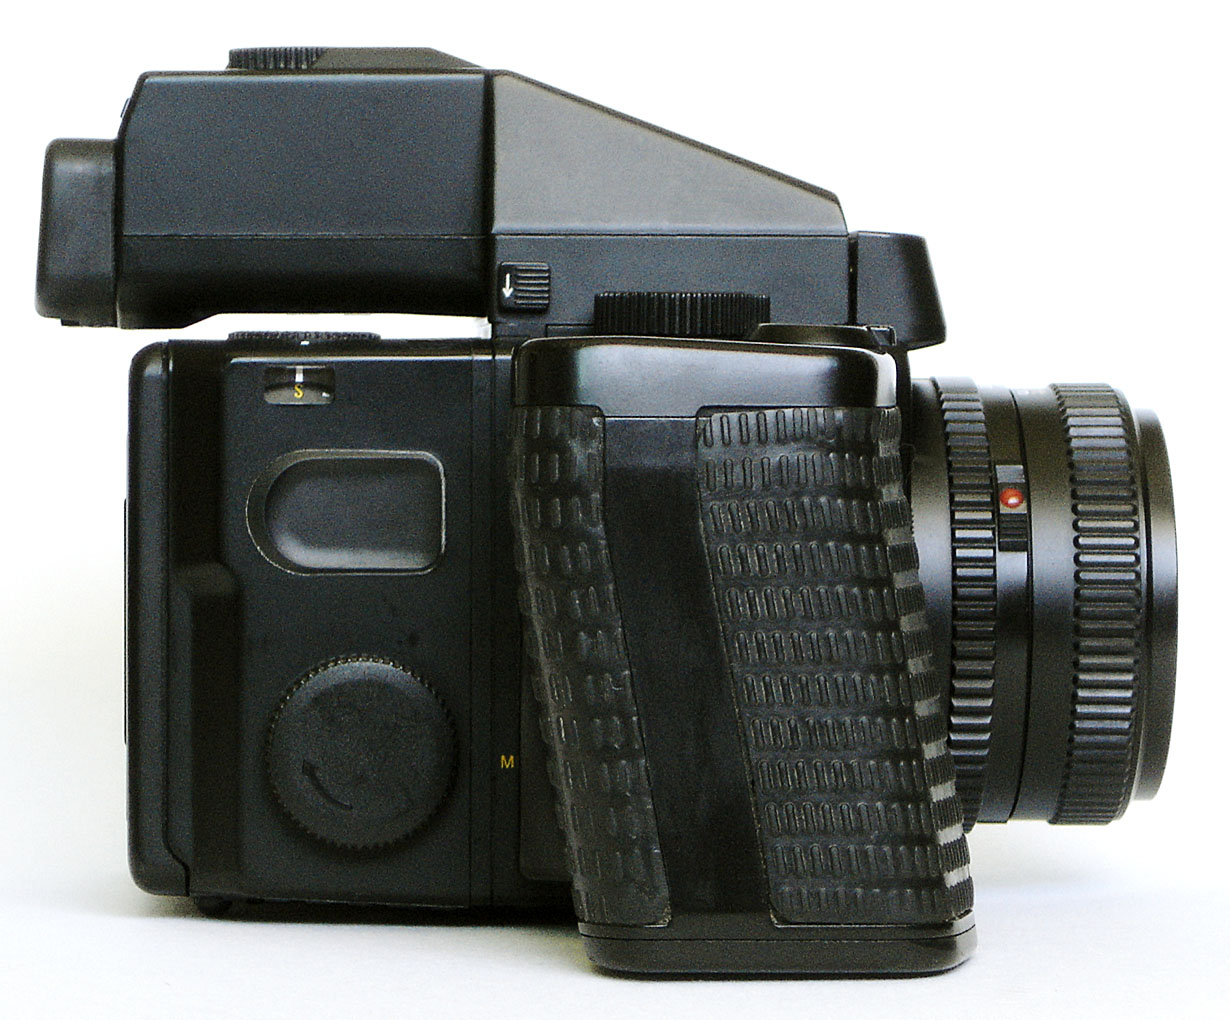 カメラ フィルムカメラ File:Mamiya 645 Super right.jpg - Wikimedia Commons